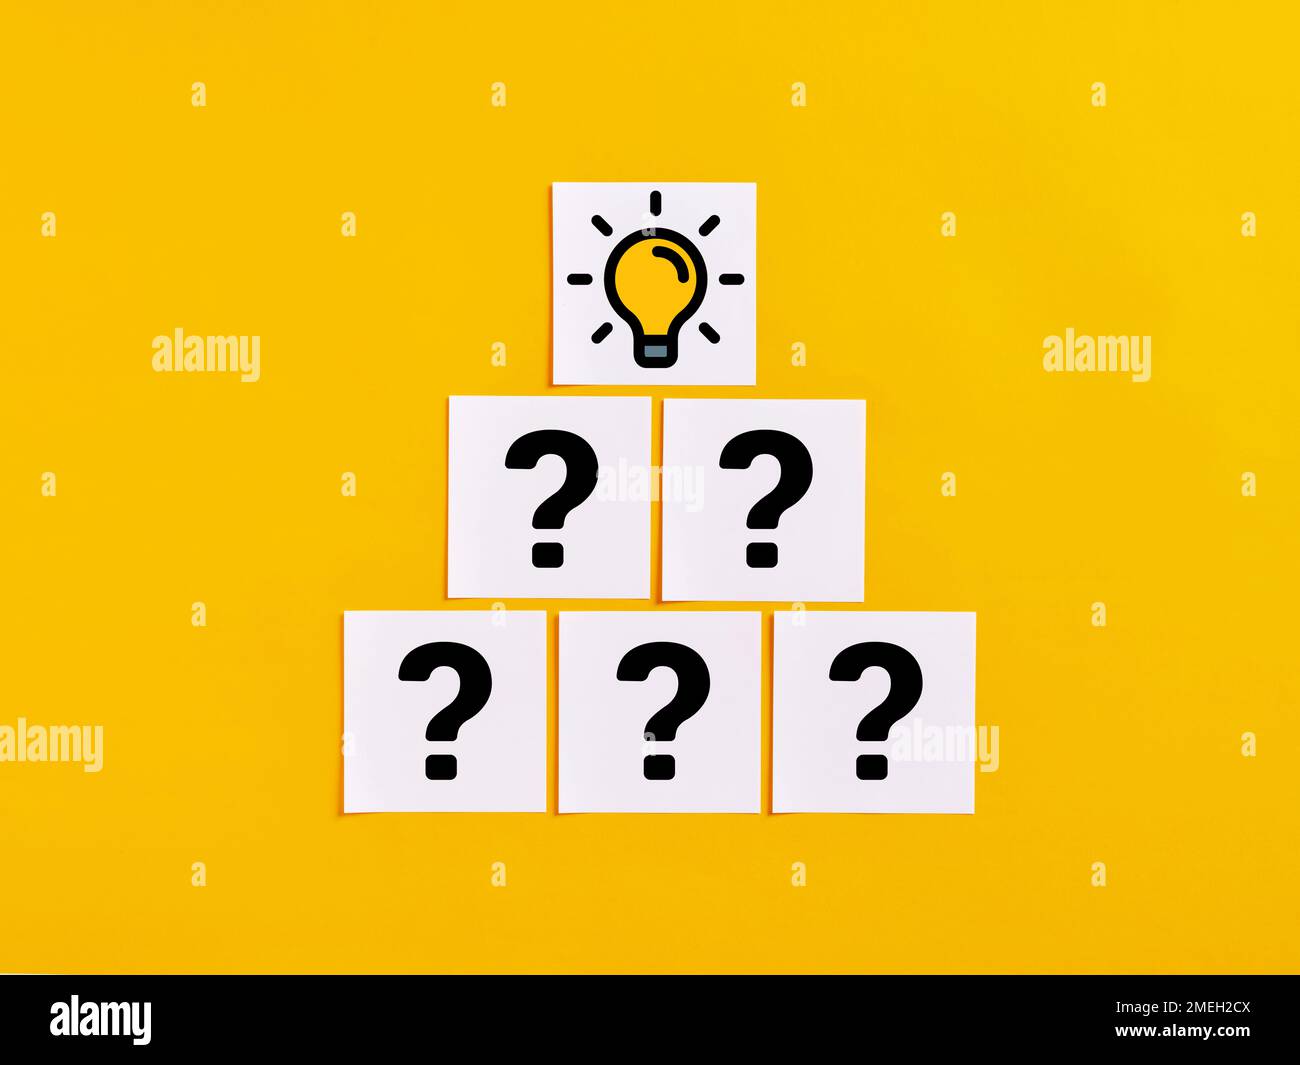 Um eine kreative Idee zu entwickeln. Brainstorming und Kreativität. Weiße Notizzettel mit Fragezeichen und Lampensymbolen auf gelbem Hintergrund. Stockfoto